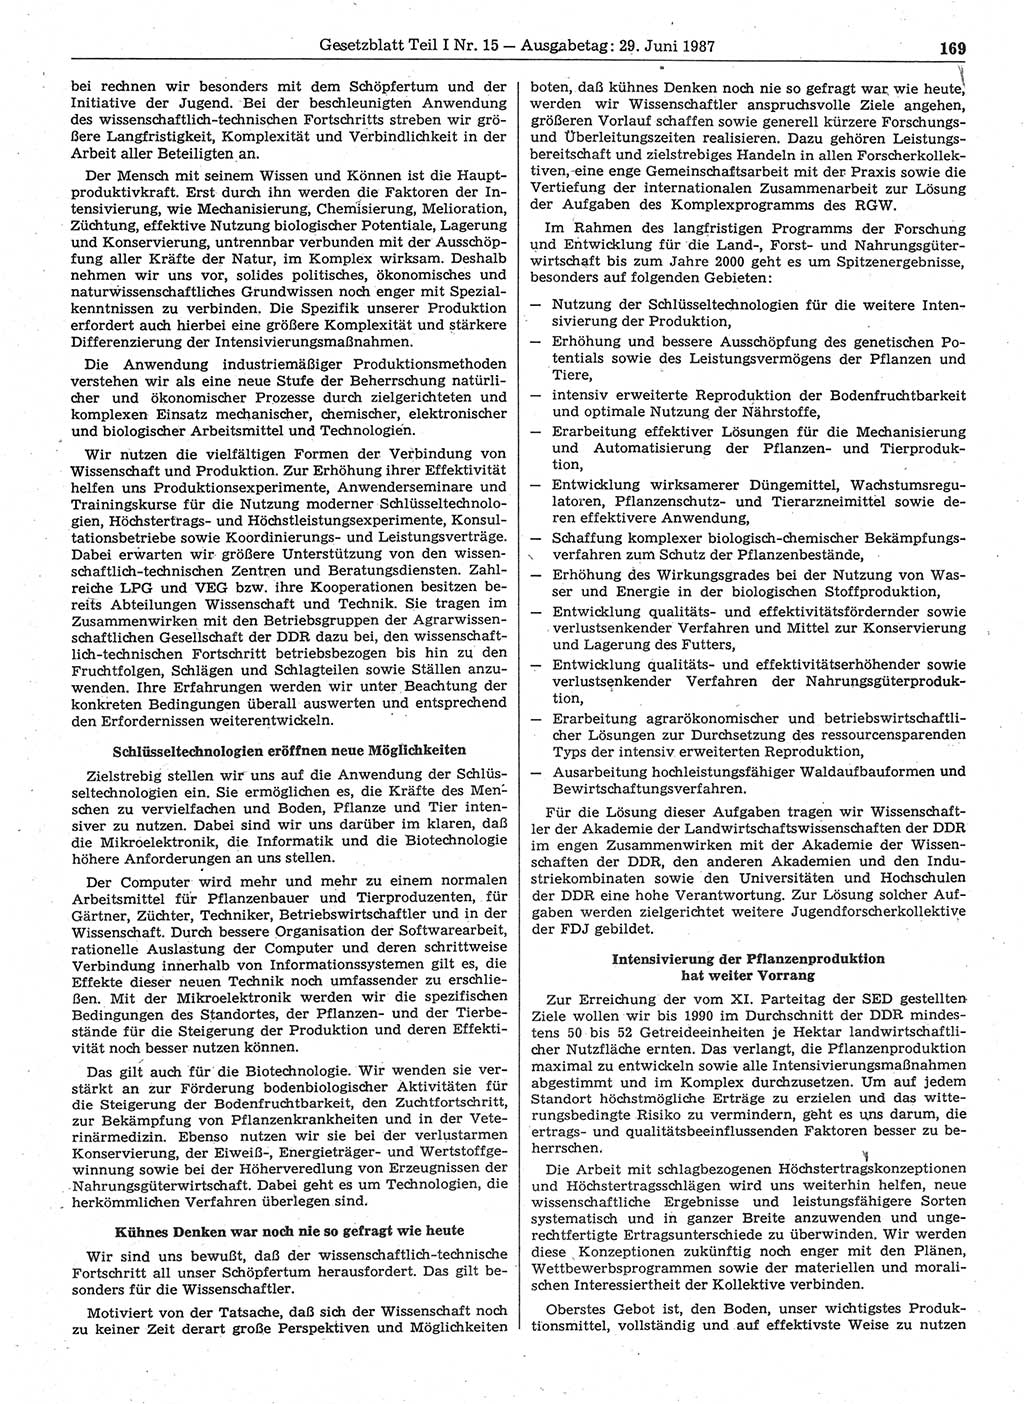 Gesetzblatt (GBl.) der Deutschen Demokratischen Republik (DDR) Teil Ⅰ 1987, Seite 169 (GBl. DDR Ⅰ 1987, S. 169)